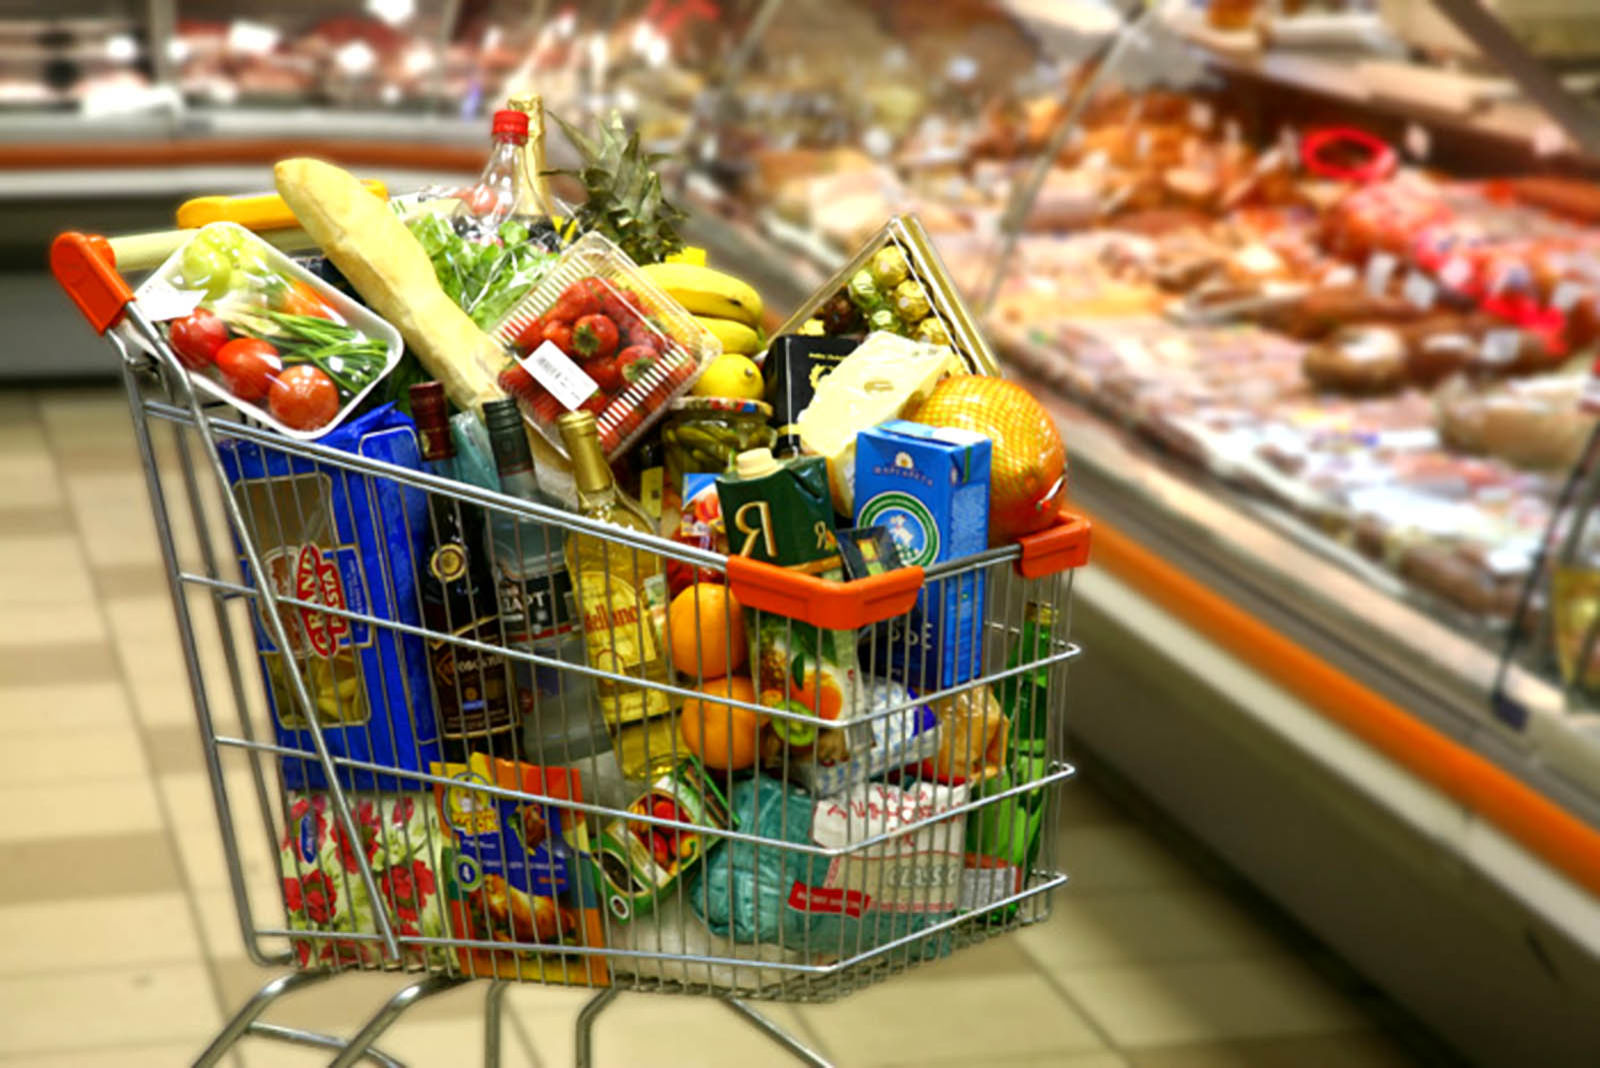 Украинцы тратят на еду почти половину дохода – исследование